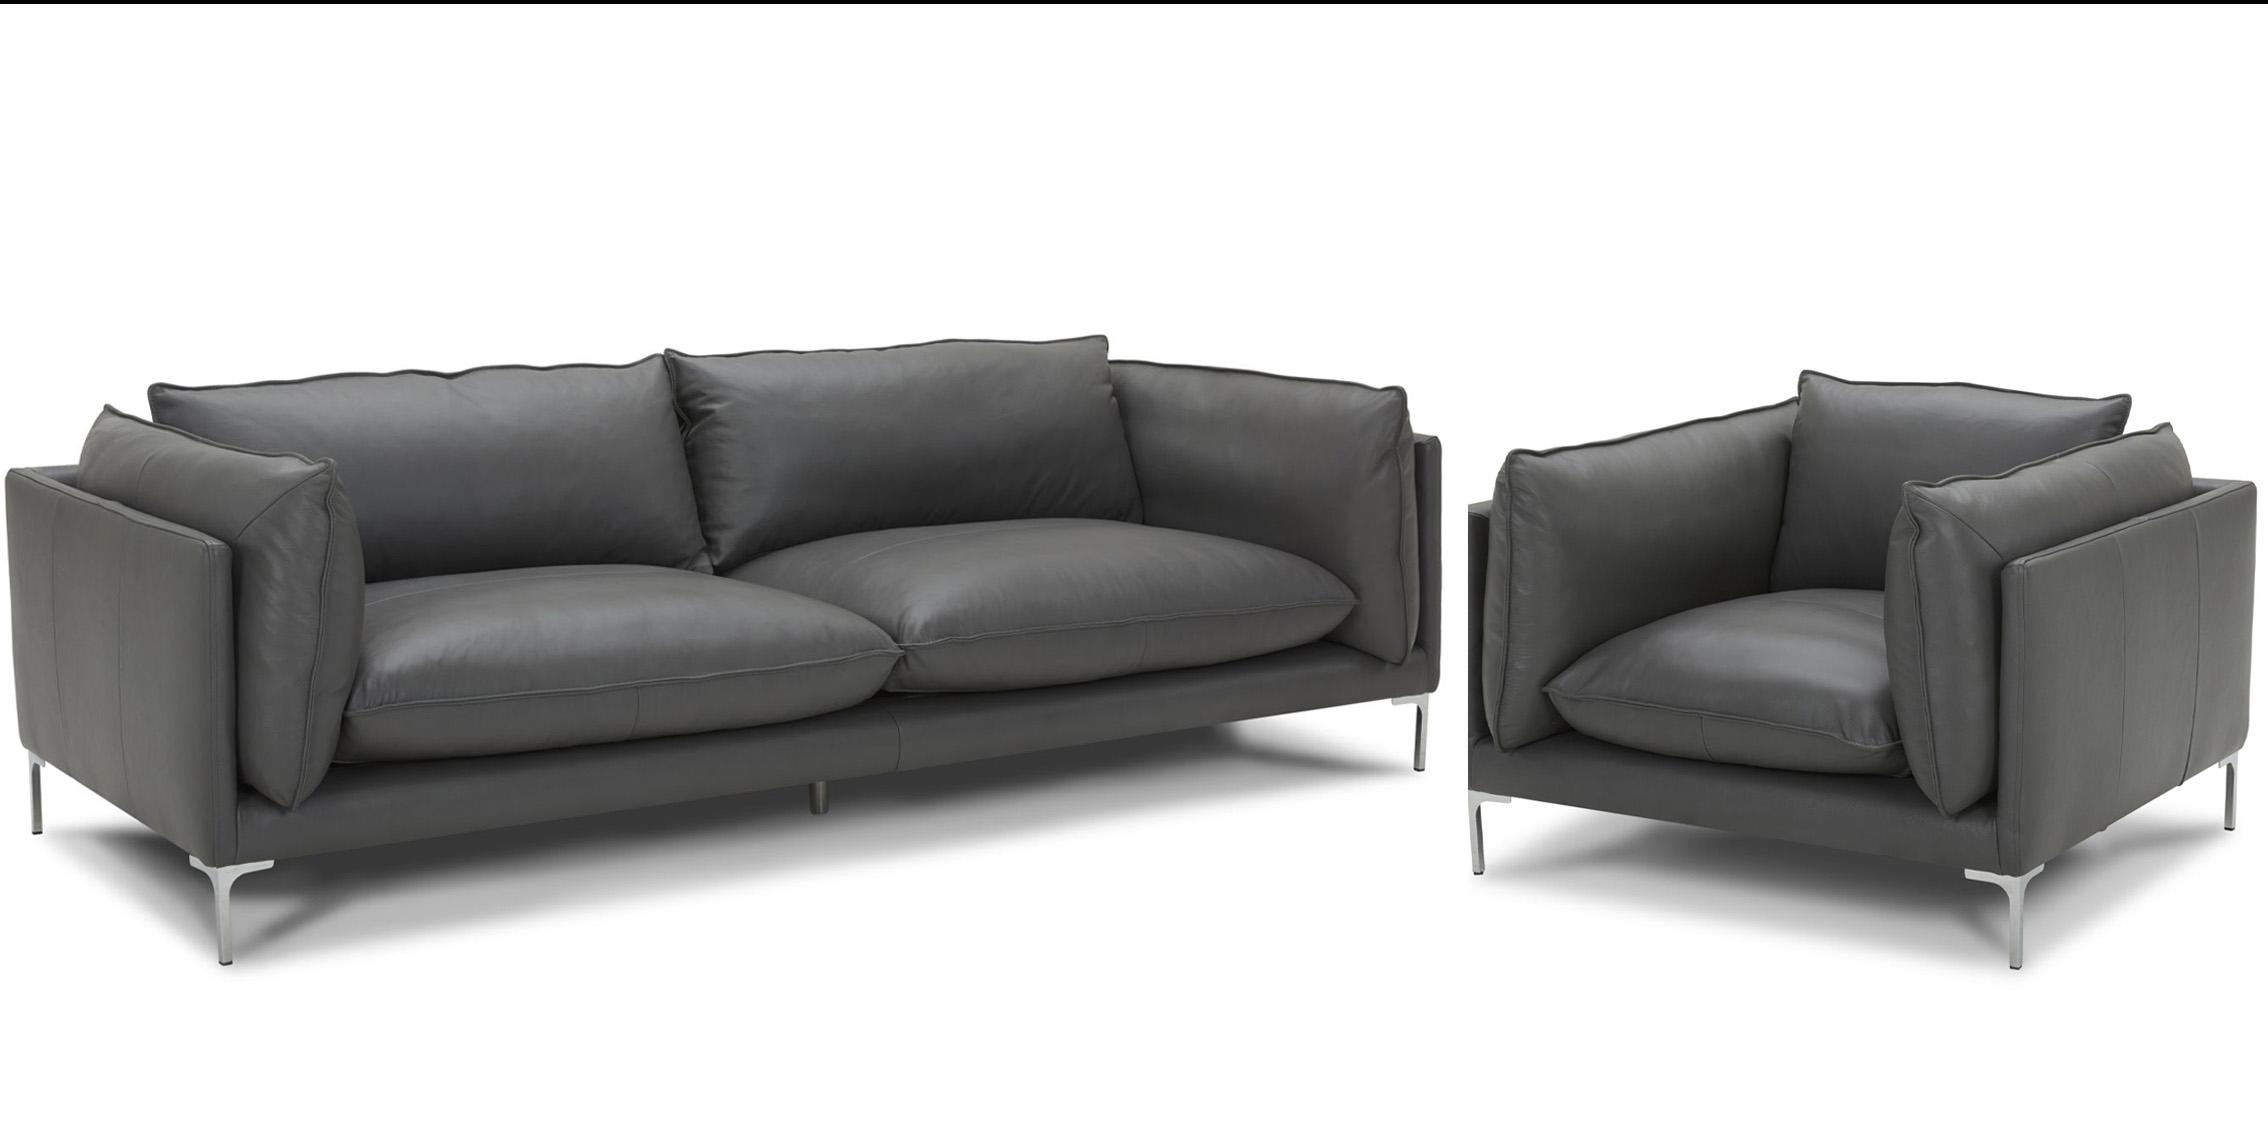 Contemporary, Modern Sofa Set VGKKKF2627-L2925-SOFA-Set-2 VGKKKF2627-L2925-SOFA-Set-2 in Gray Full Leather